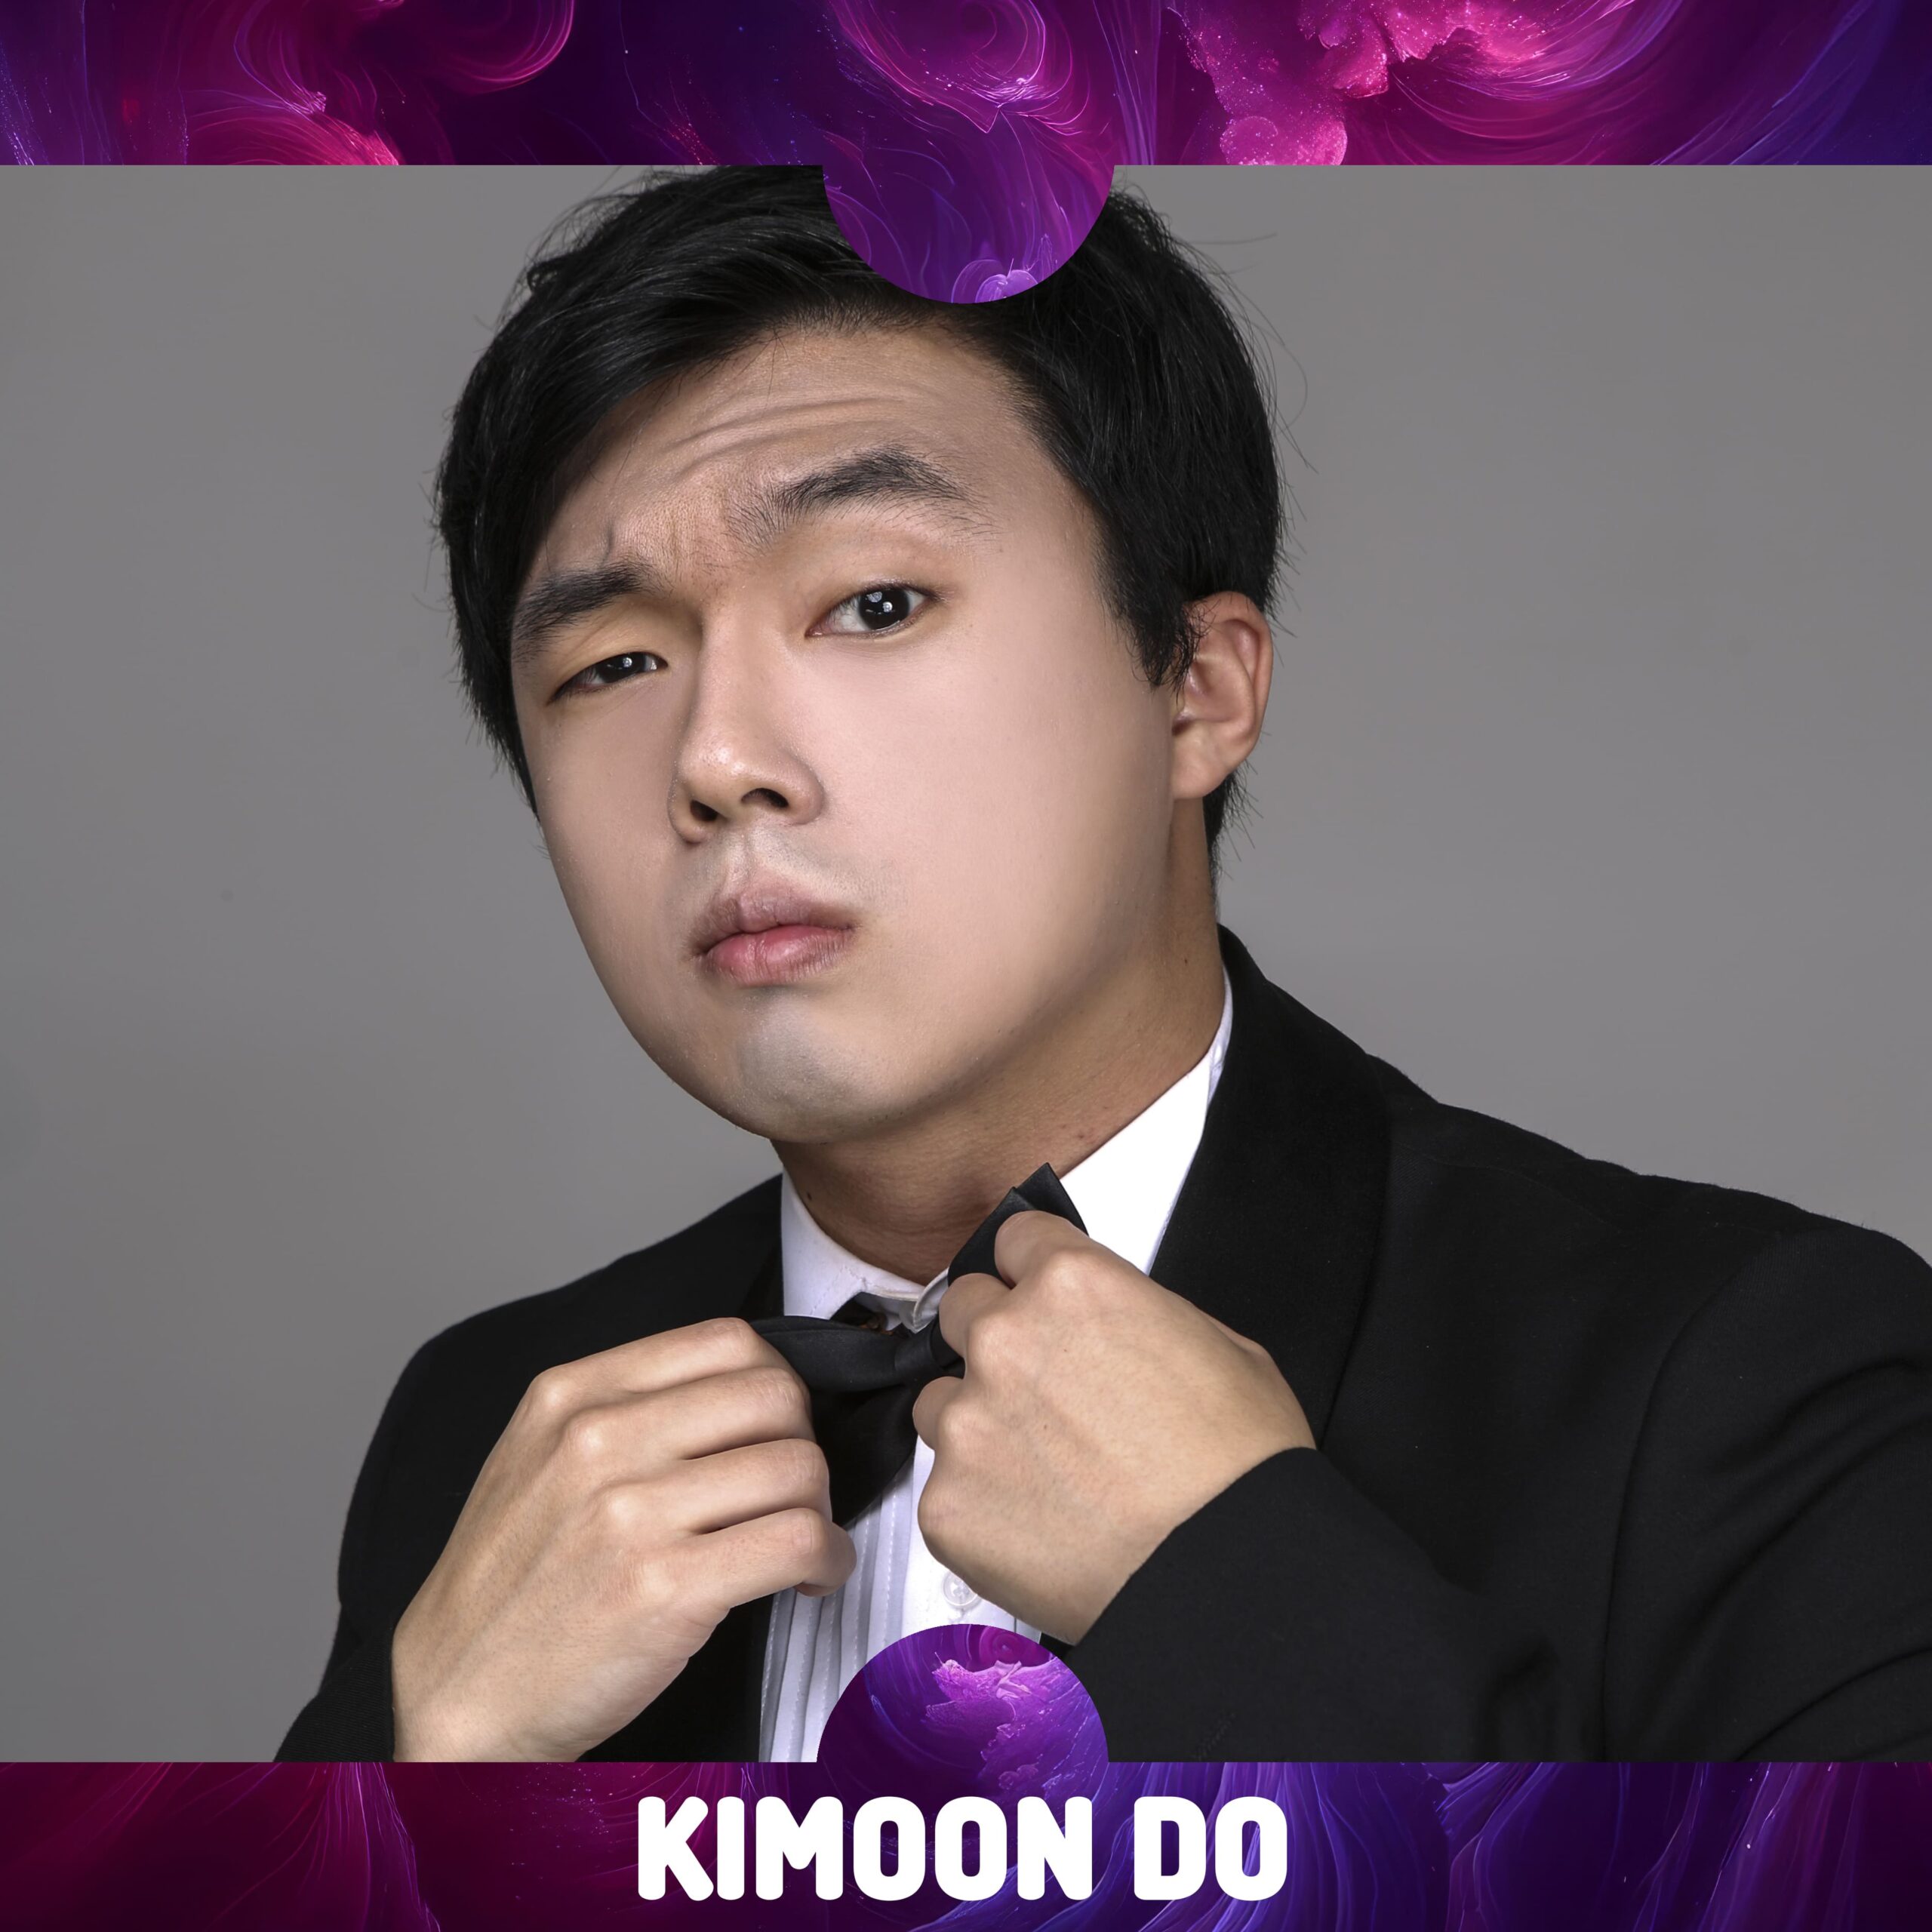 Kimoon Do